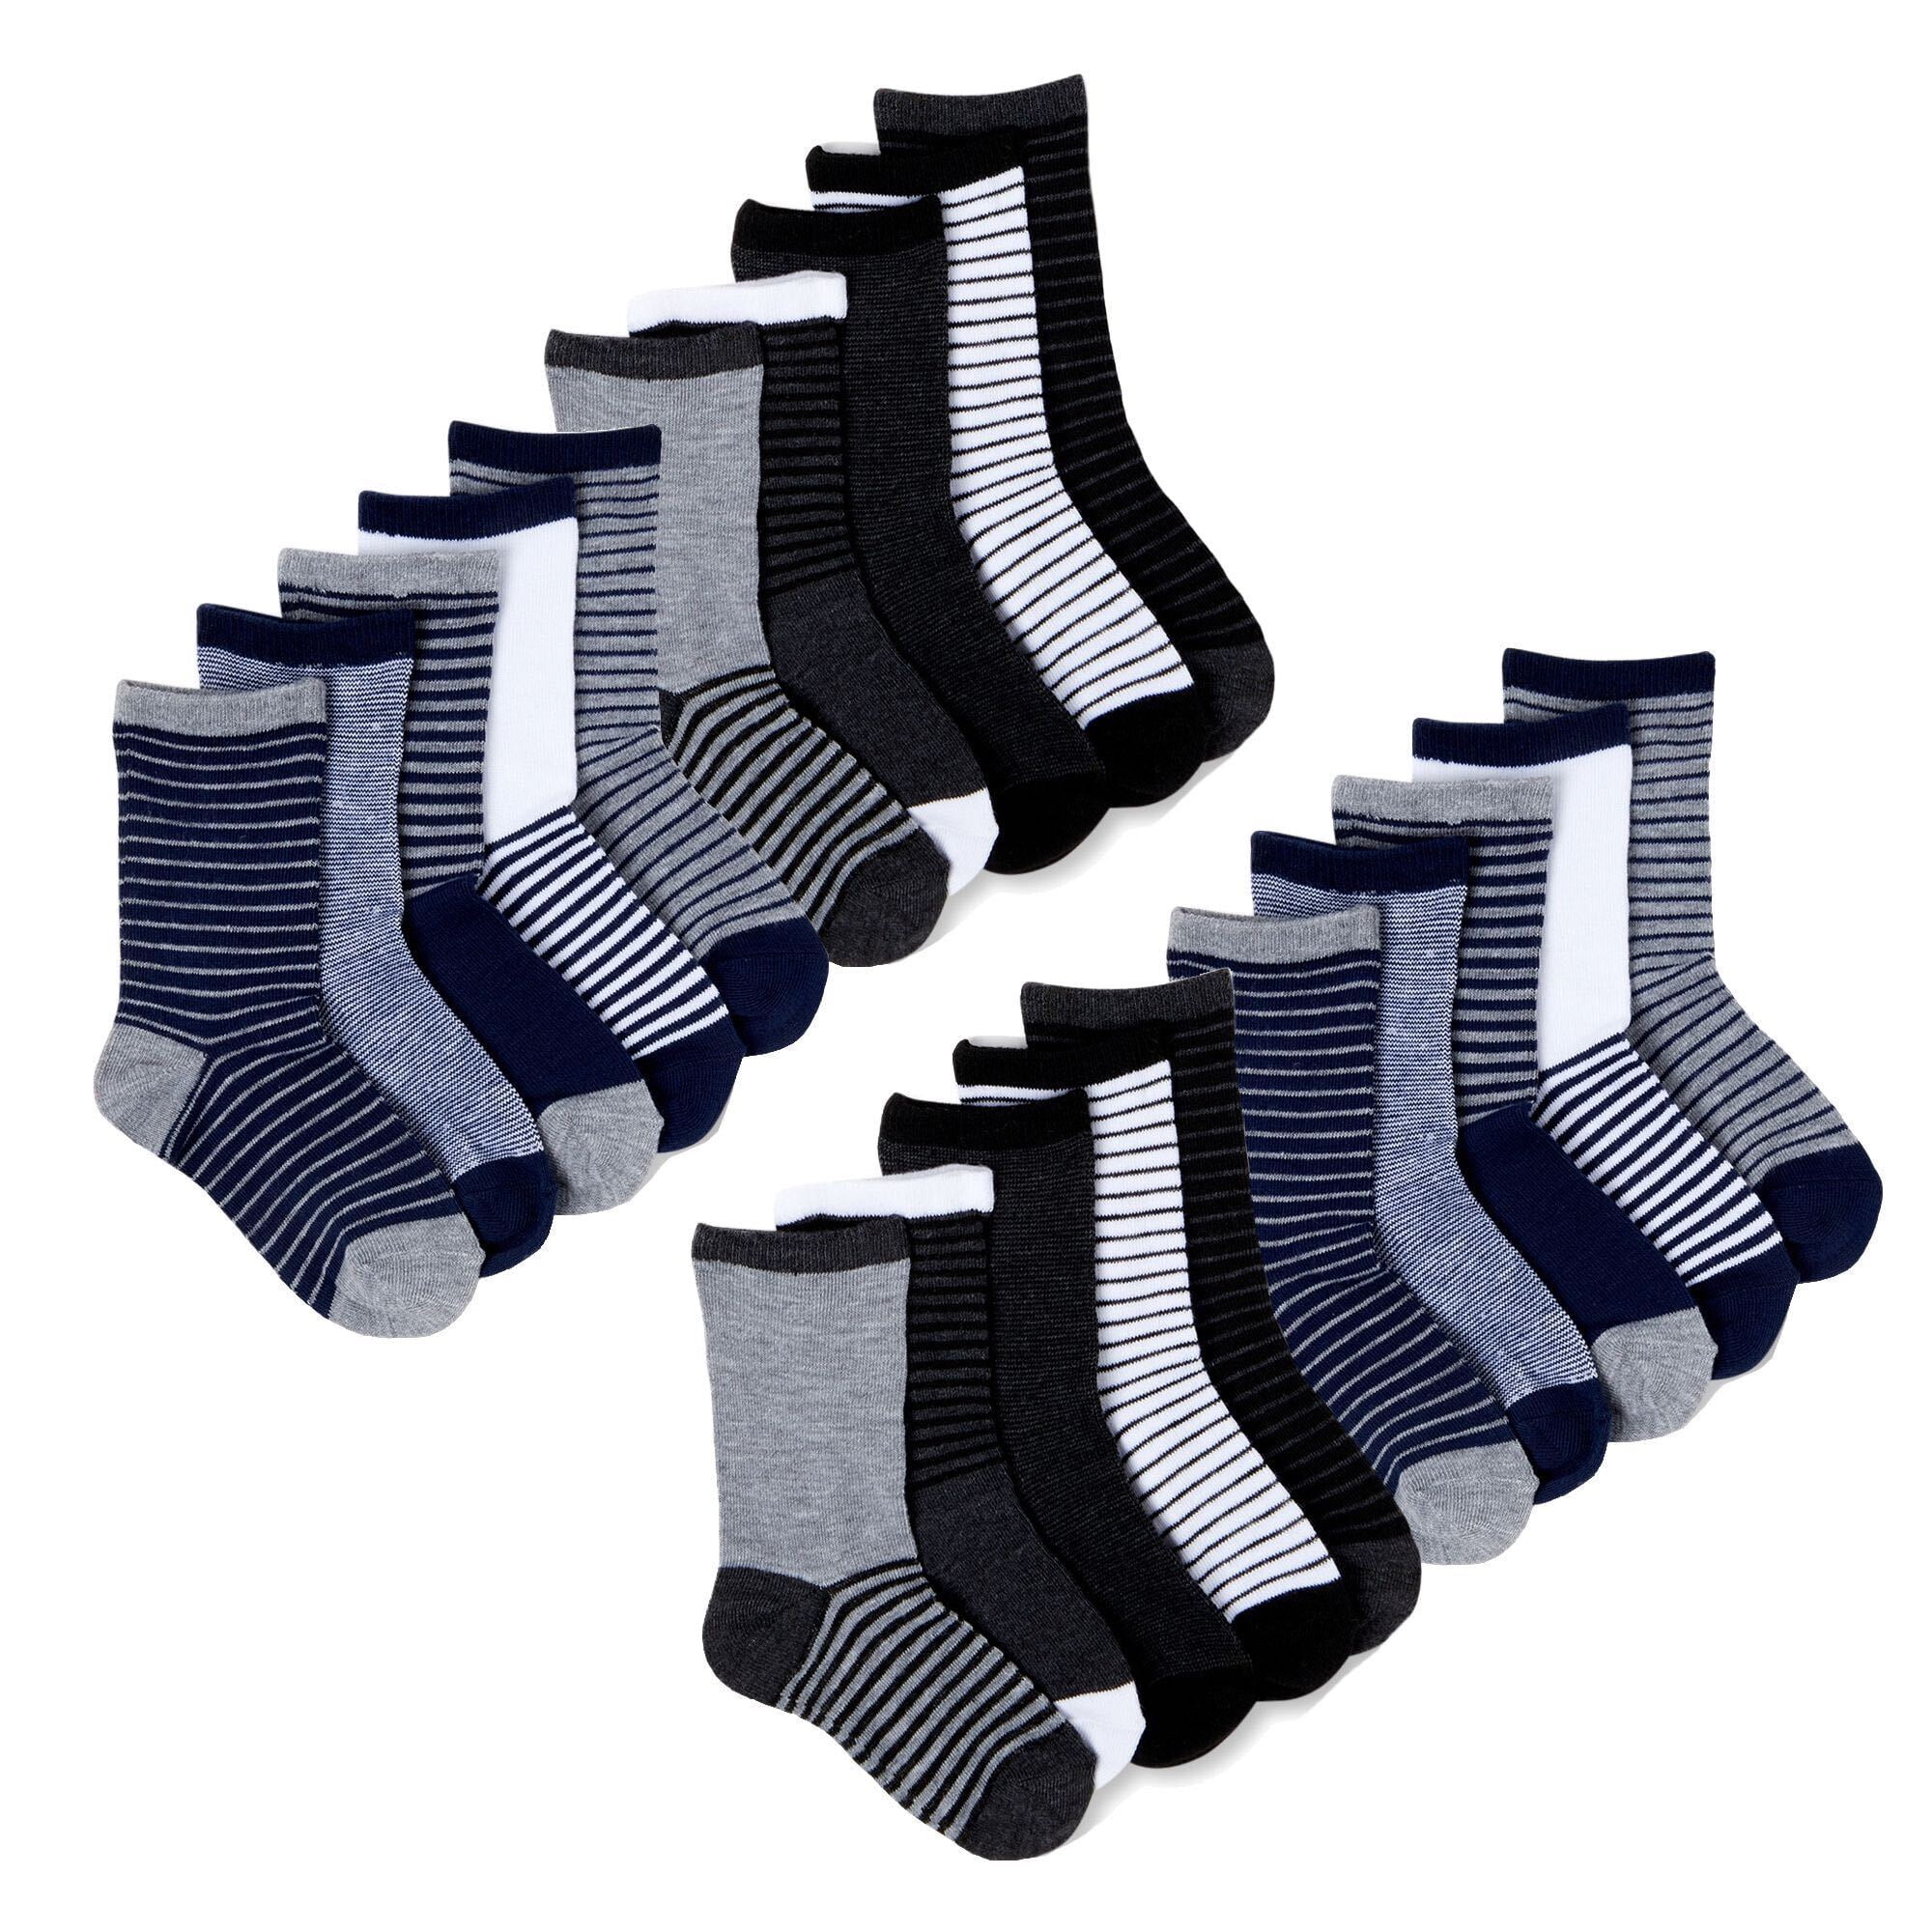 Wonder Nation Little Boy's 10 Pair Crew Socks Shoe SZ S 4.5-8.5 Assorted Colors 